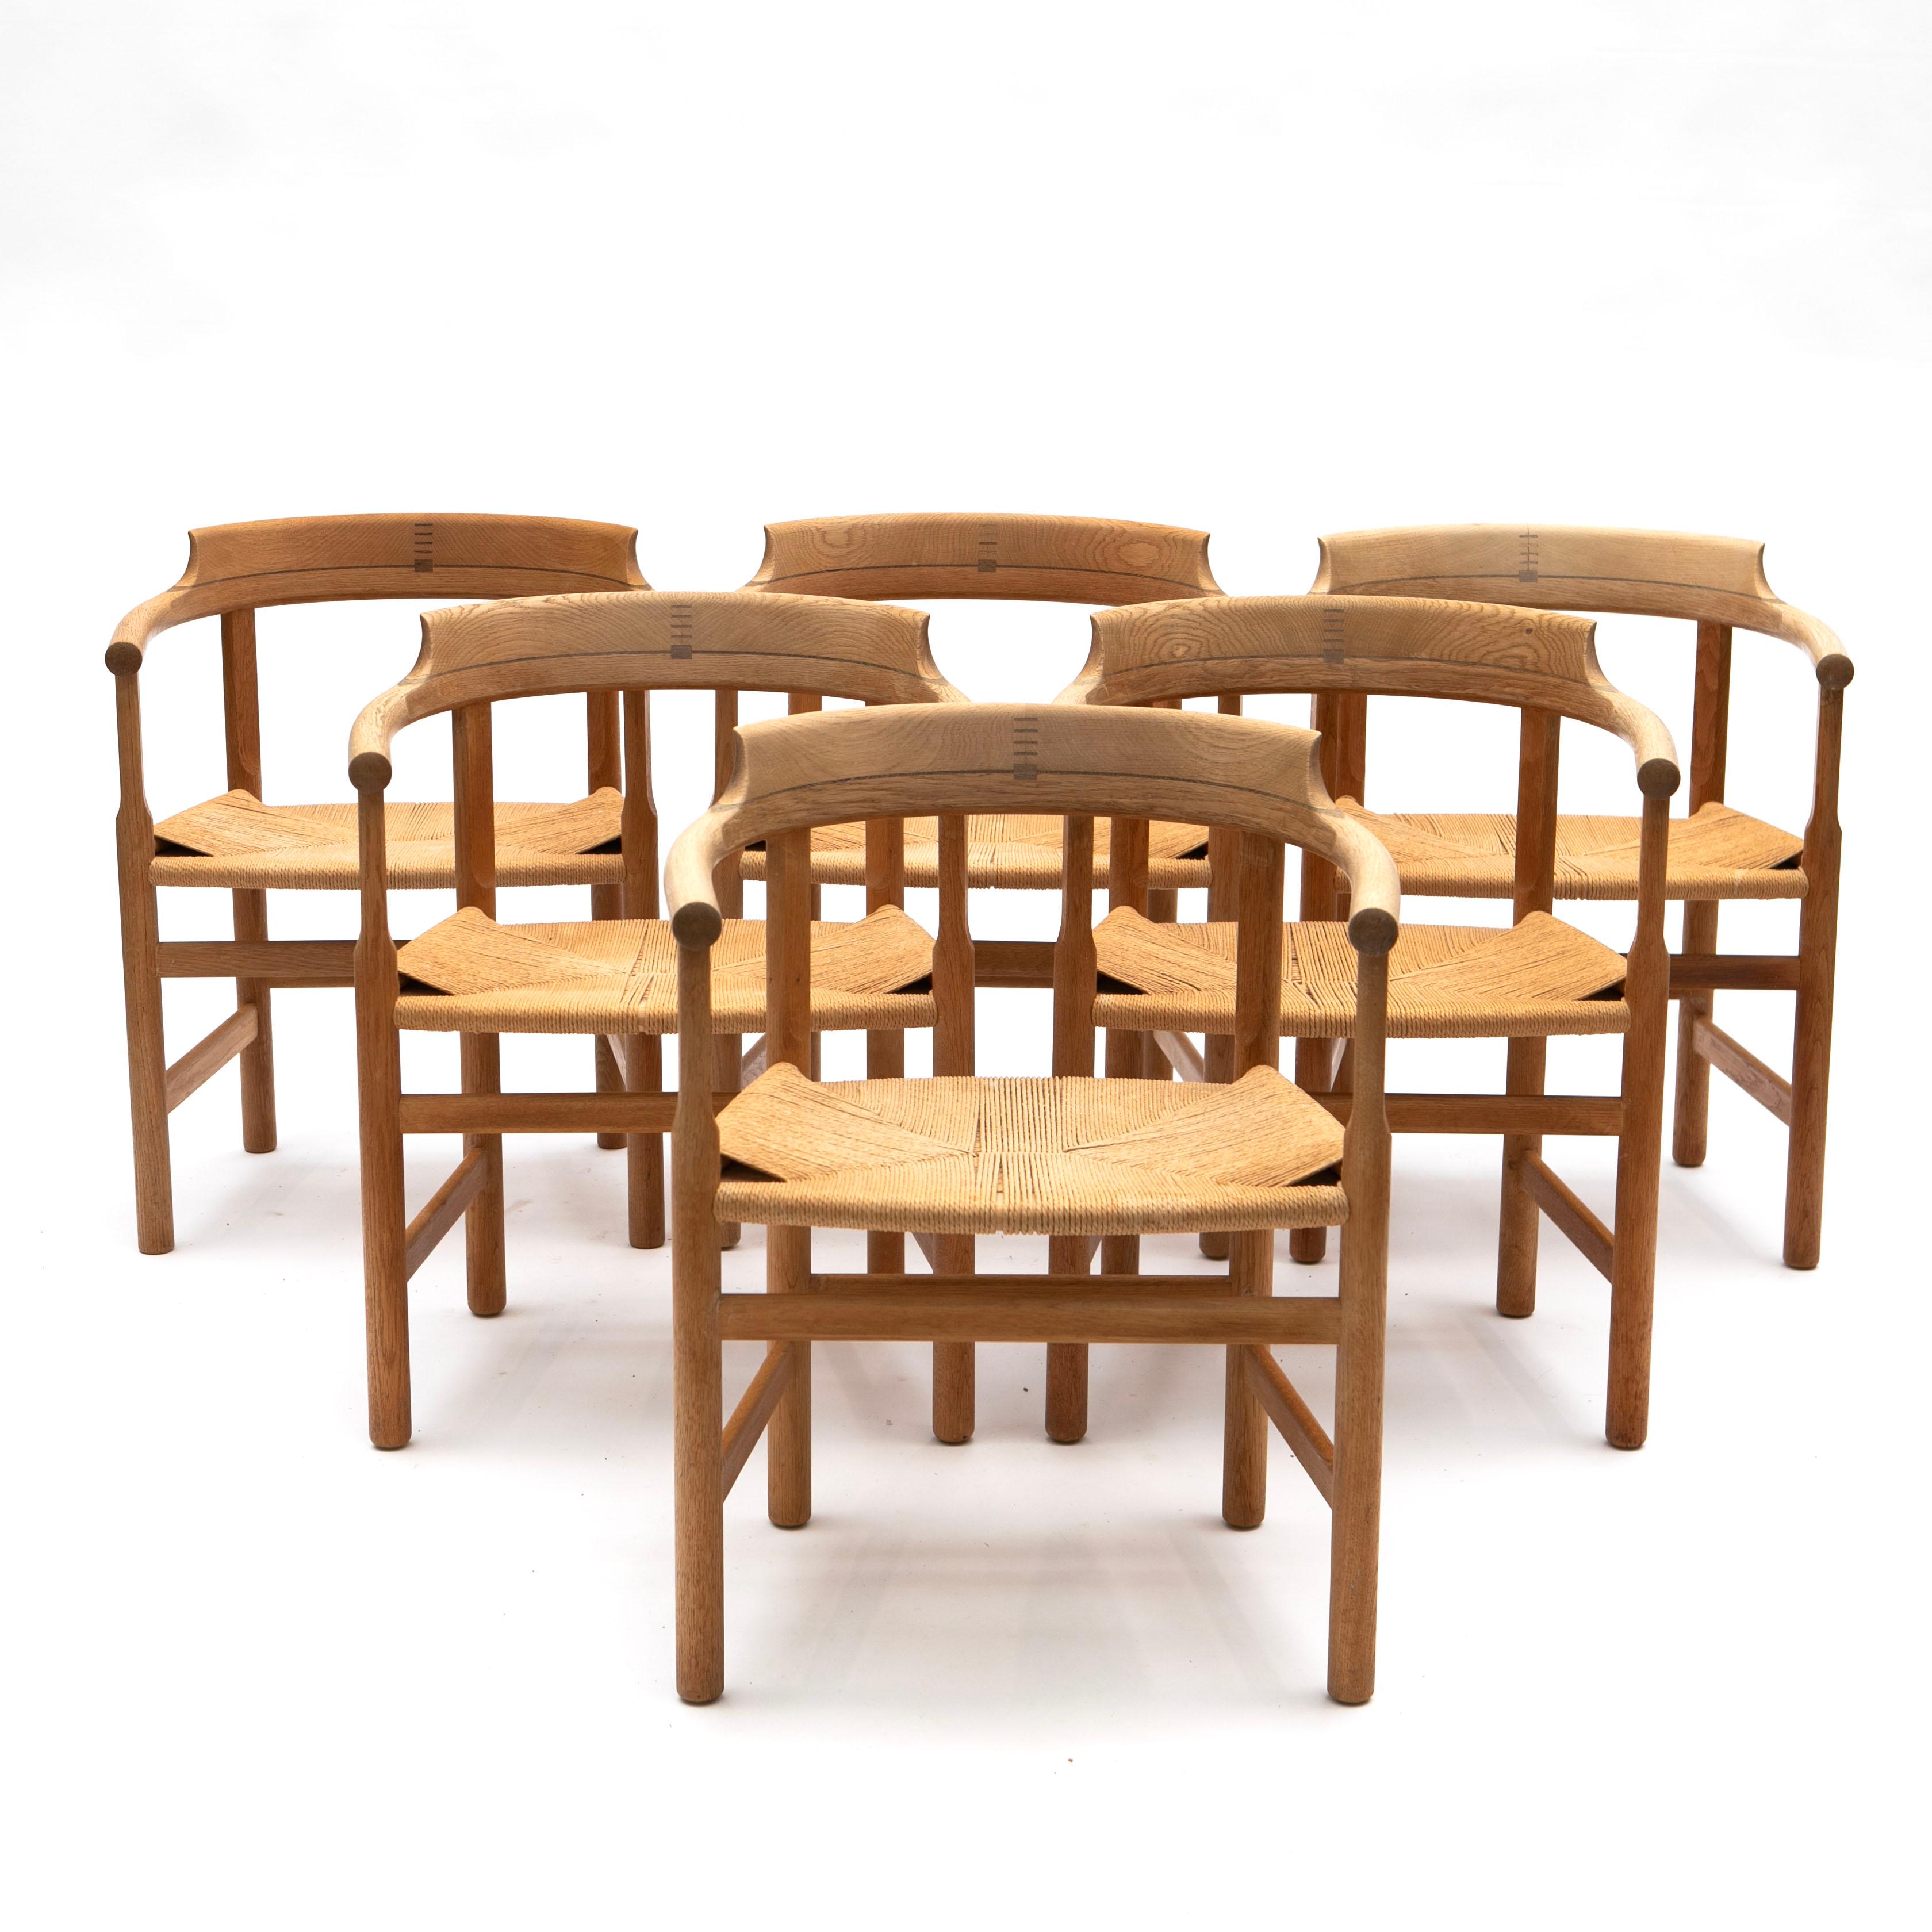 6 Sessel, Modell PP 62 von Hans J. Wegner.
Gefertigt aus massiver Eiche mit Einlegearbeiten aus Wengé-Holz auf der Rückseite, Sitzflächen aus Papierkordel.
Hergestellt von PP Møbler im Jahr 1969.
Schöner Originalzustand mit natürlicher Patina.
Wird